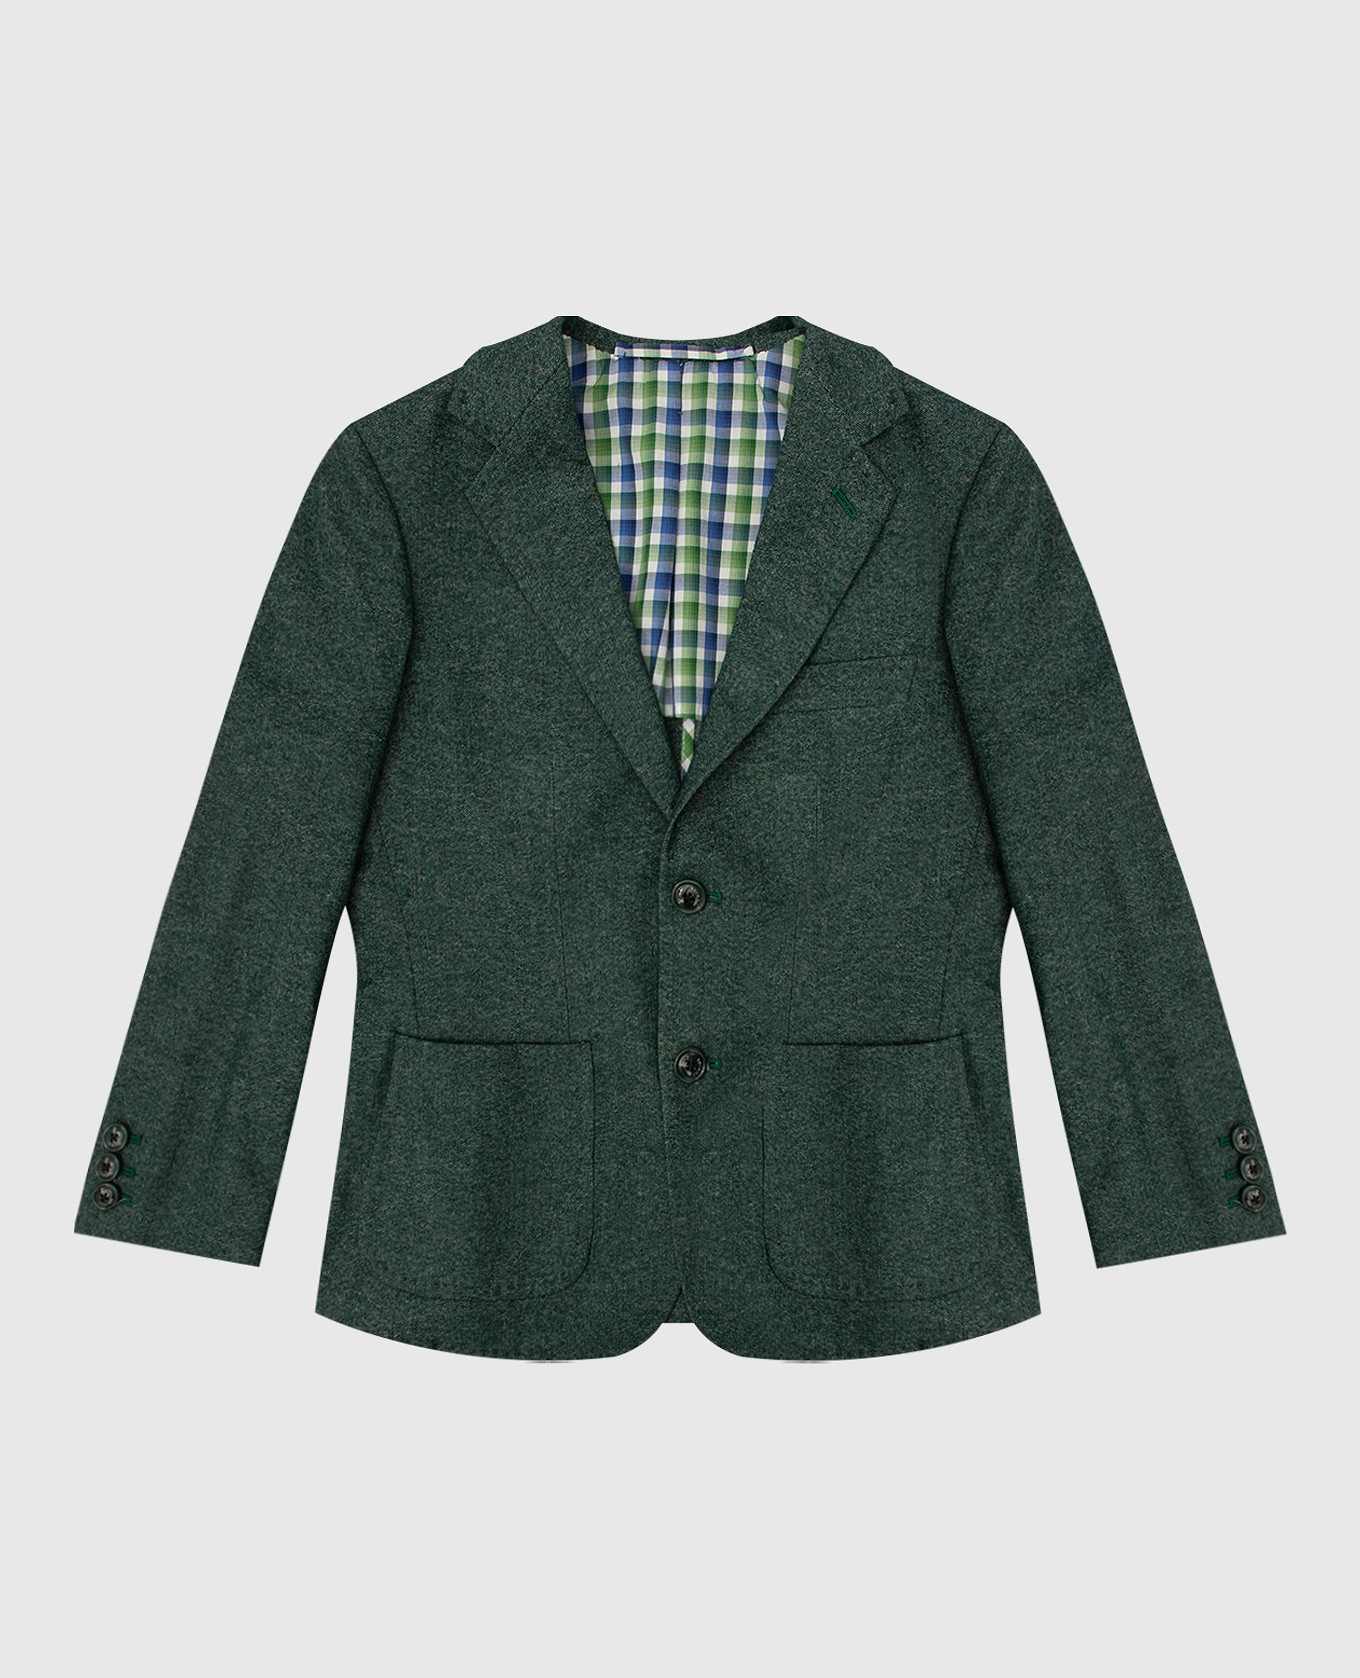 Children's green blazer